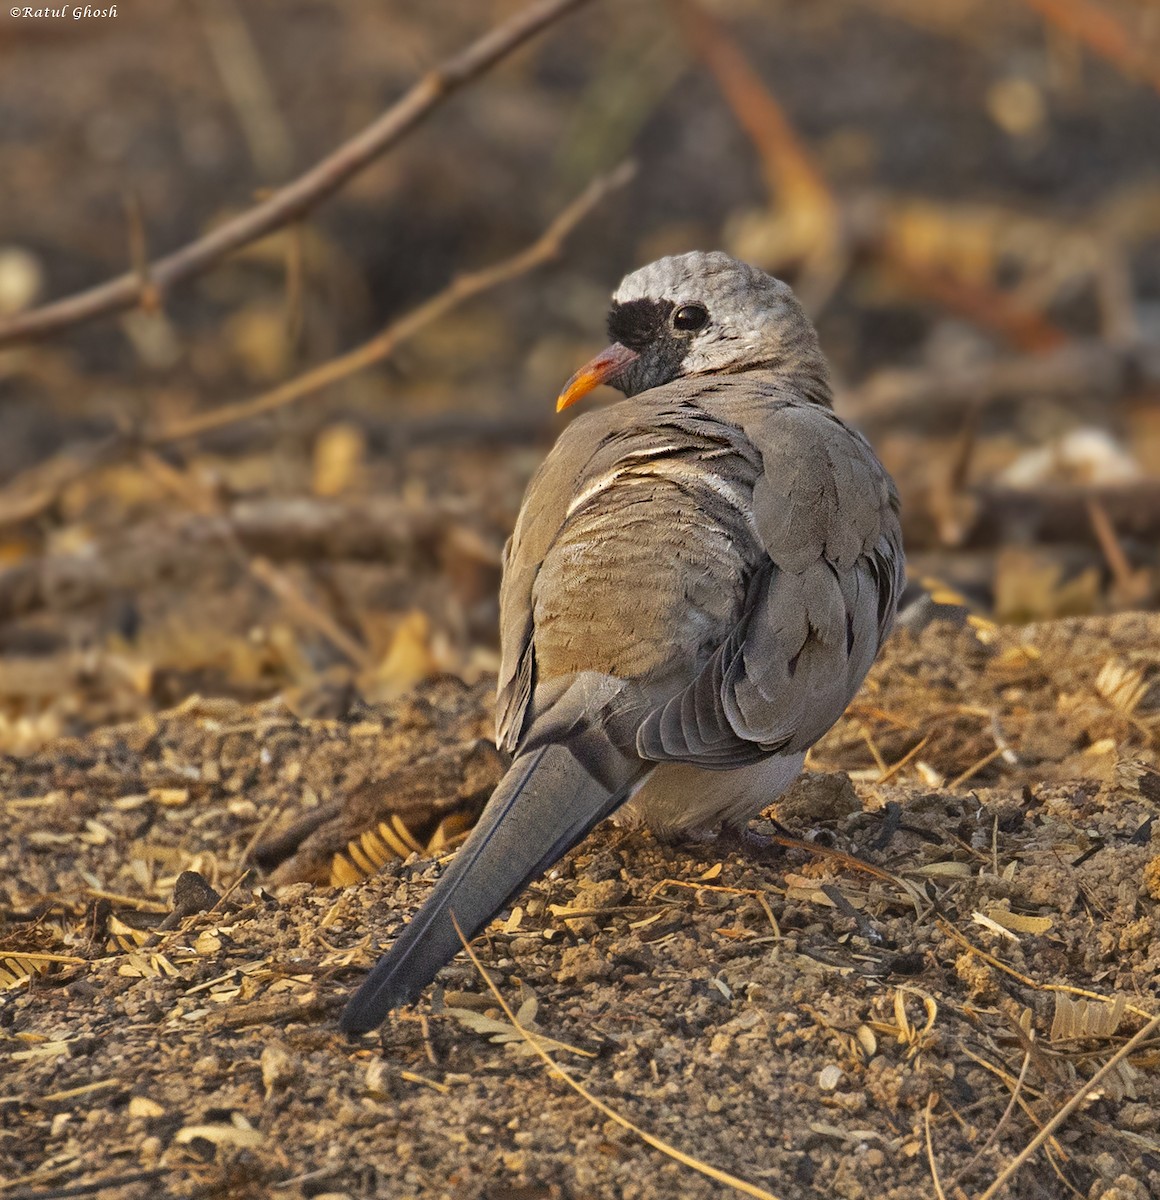 Namaqua Dove - Adhirup Ghosh